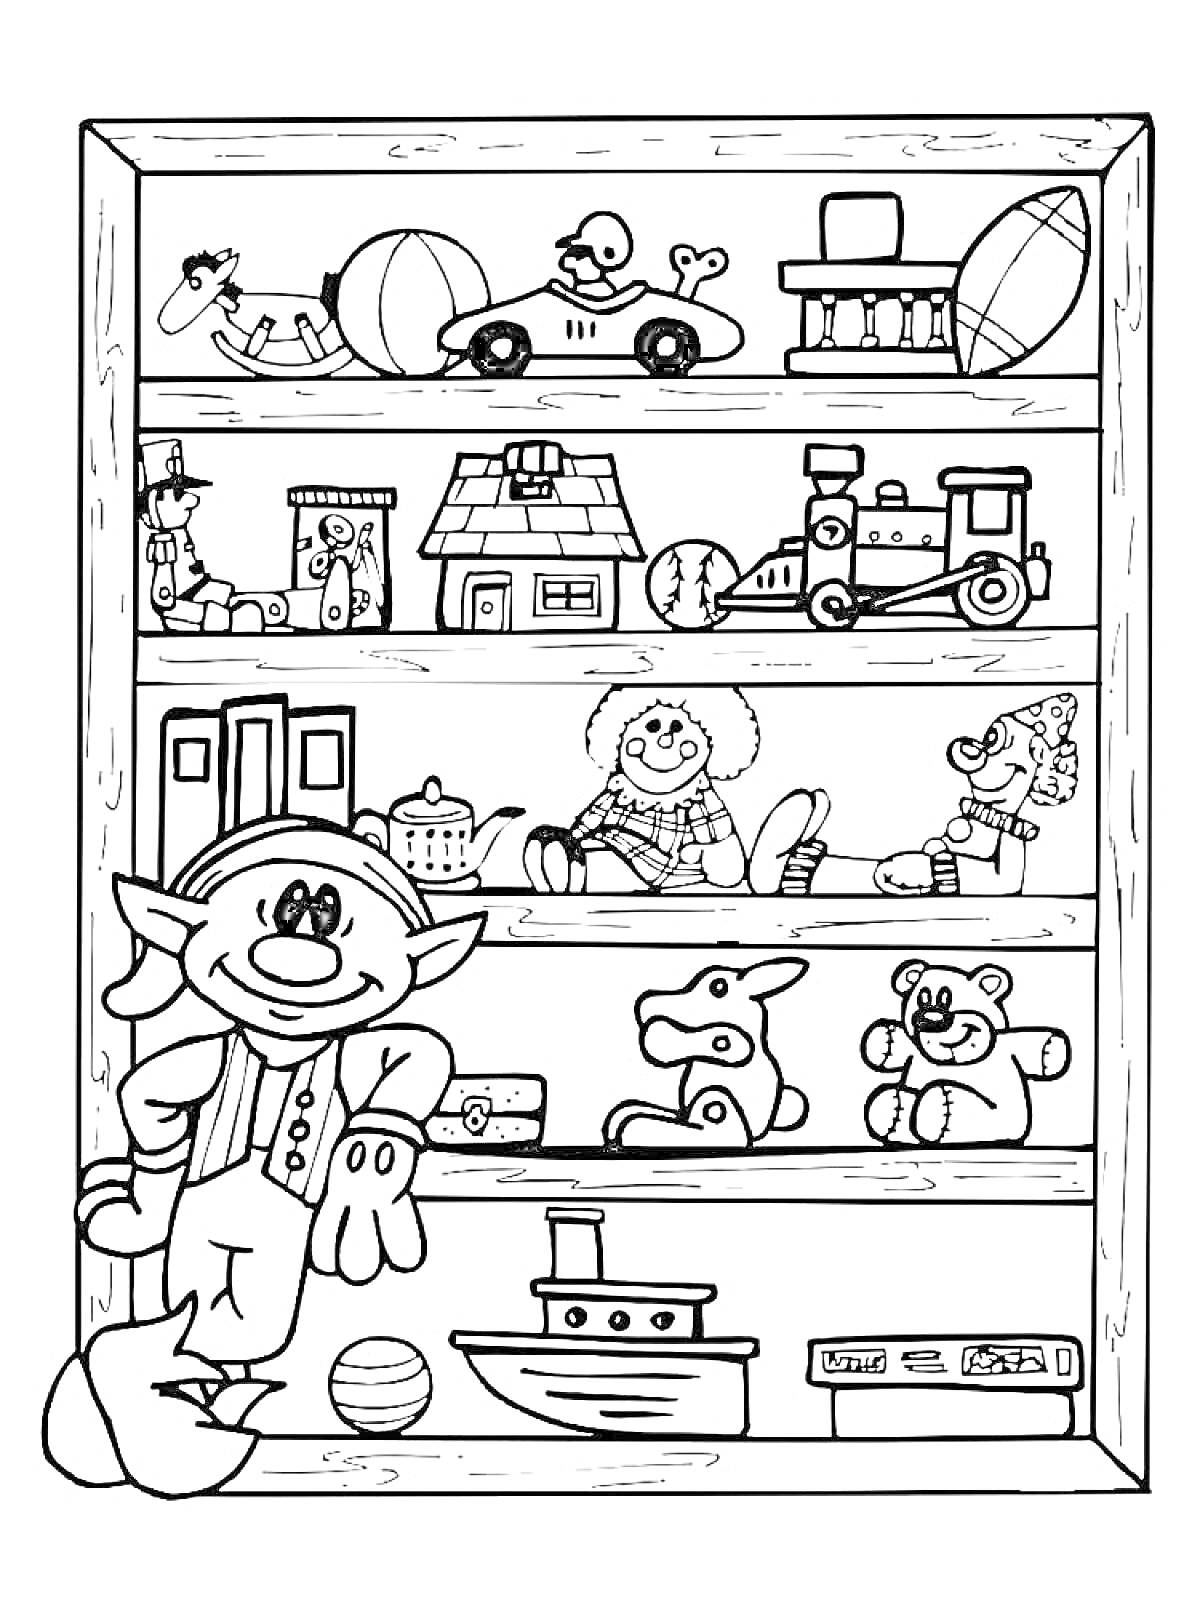 На раскраске изображено: Магазин игрушек, Полки, Игрушки, Машинка, Паровозик, Кукла, Плюшевый медведь, Мяч